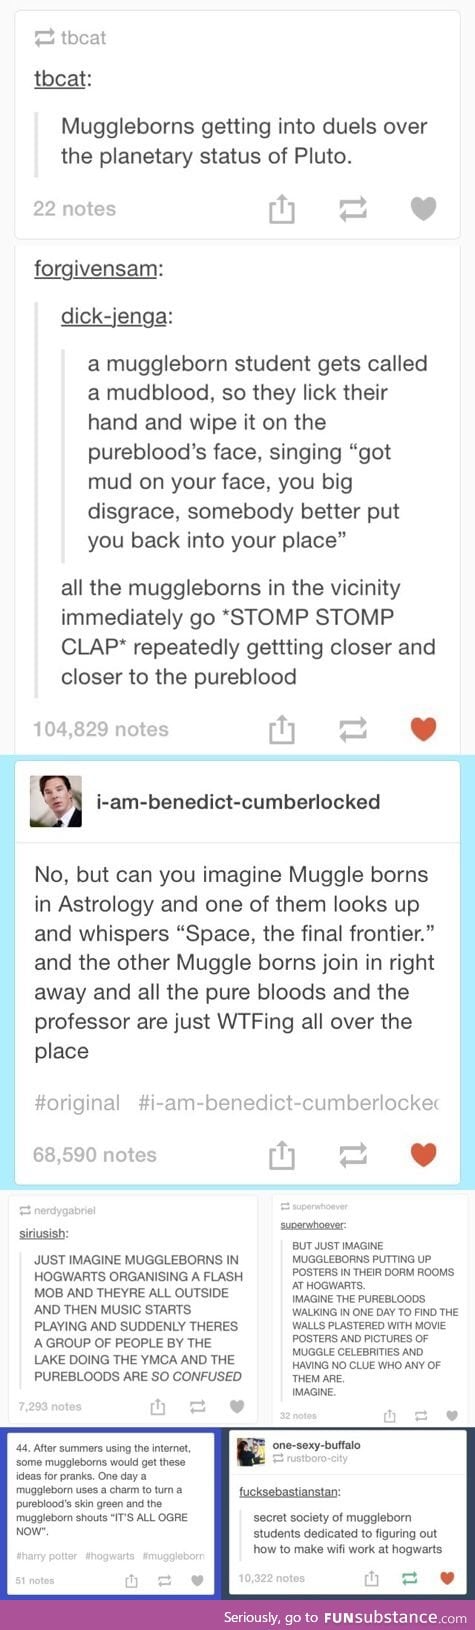 Muggleborns at Hogwarts